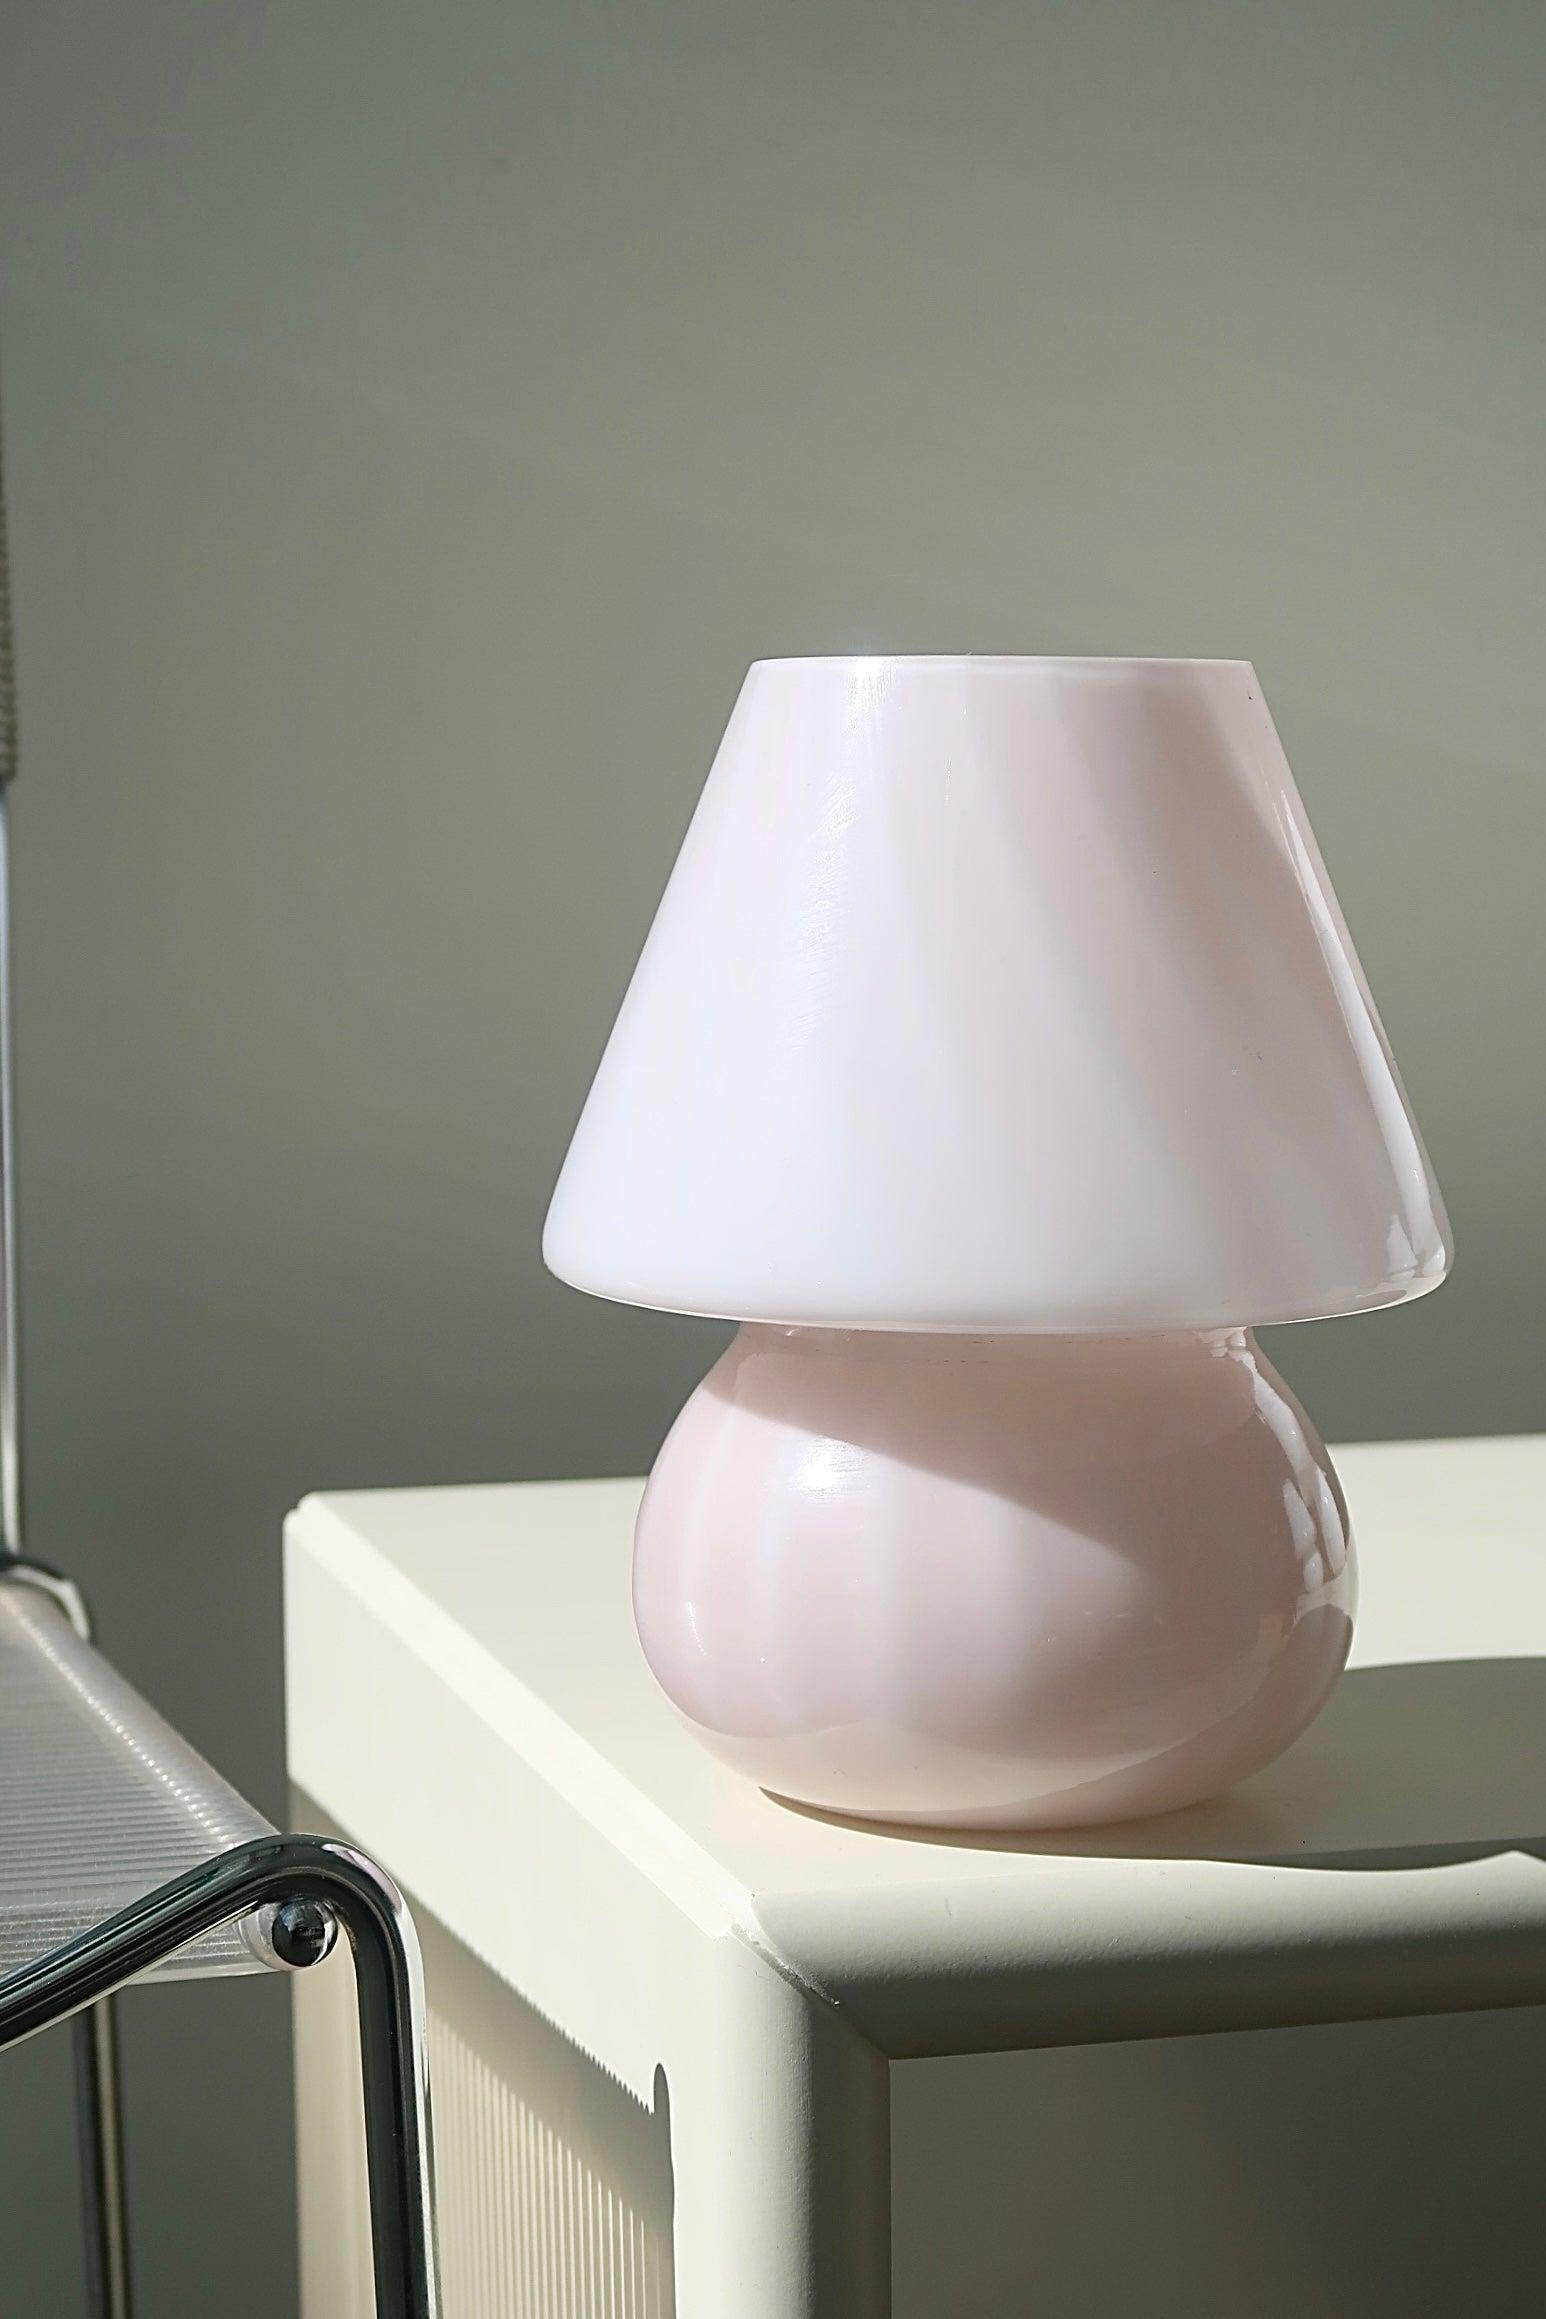 Vintage Murano lampe de table champignon bébé. Lampe soufflée à la bouche en verre rose / rose avec tourbillon. La taille parfaite pour une table de chevet. Fabriqué à la main en Italie, dans les années 1970, et livré avec un nouveau cordon